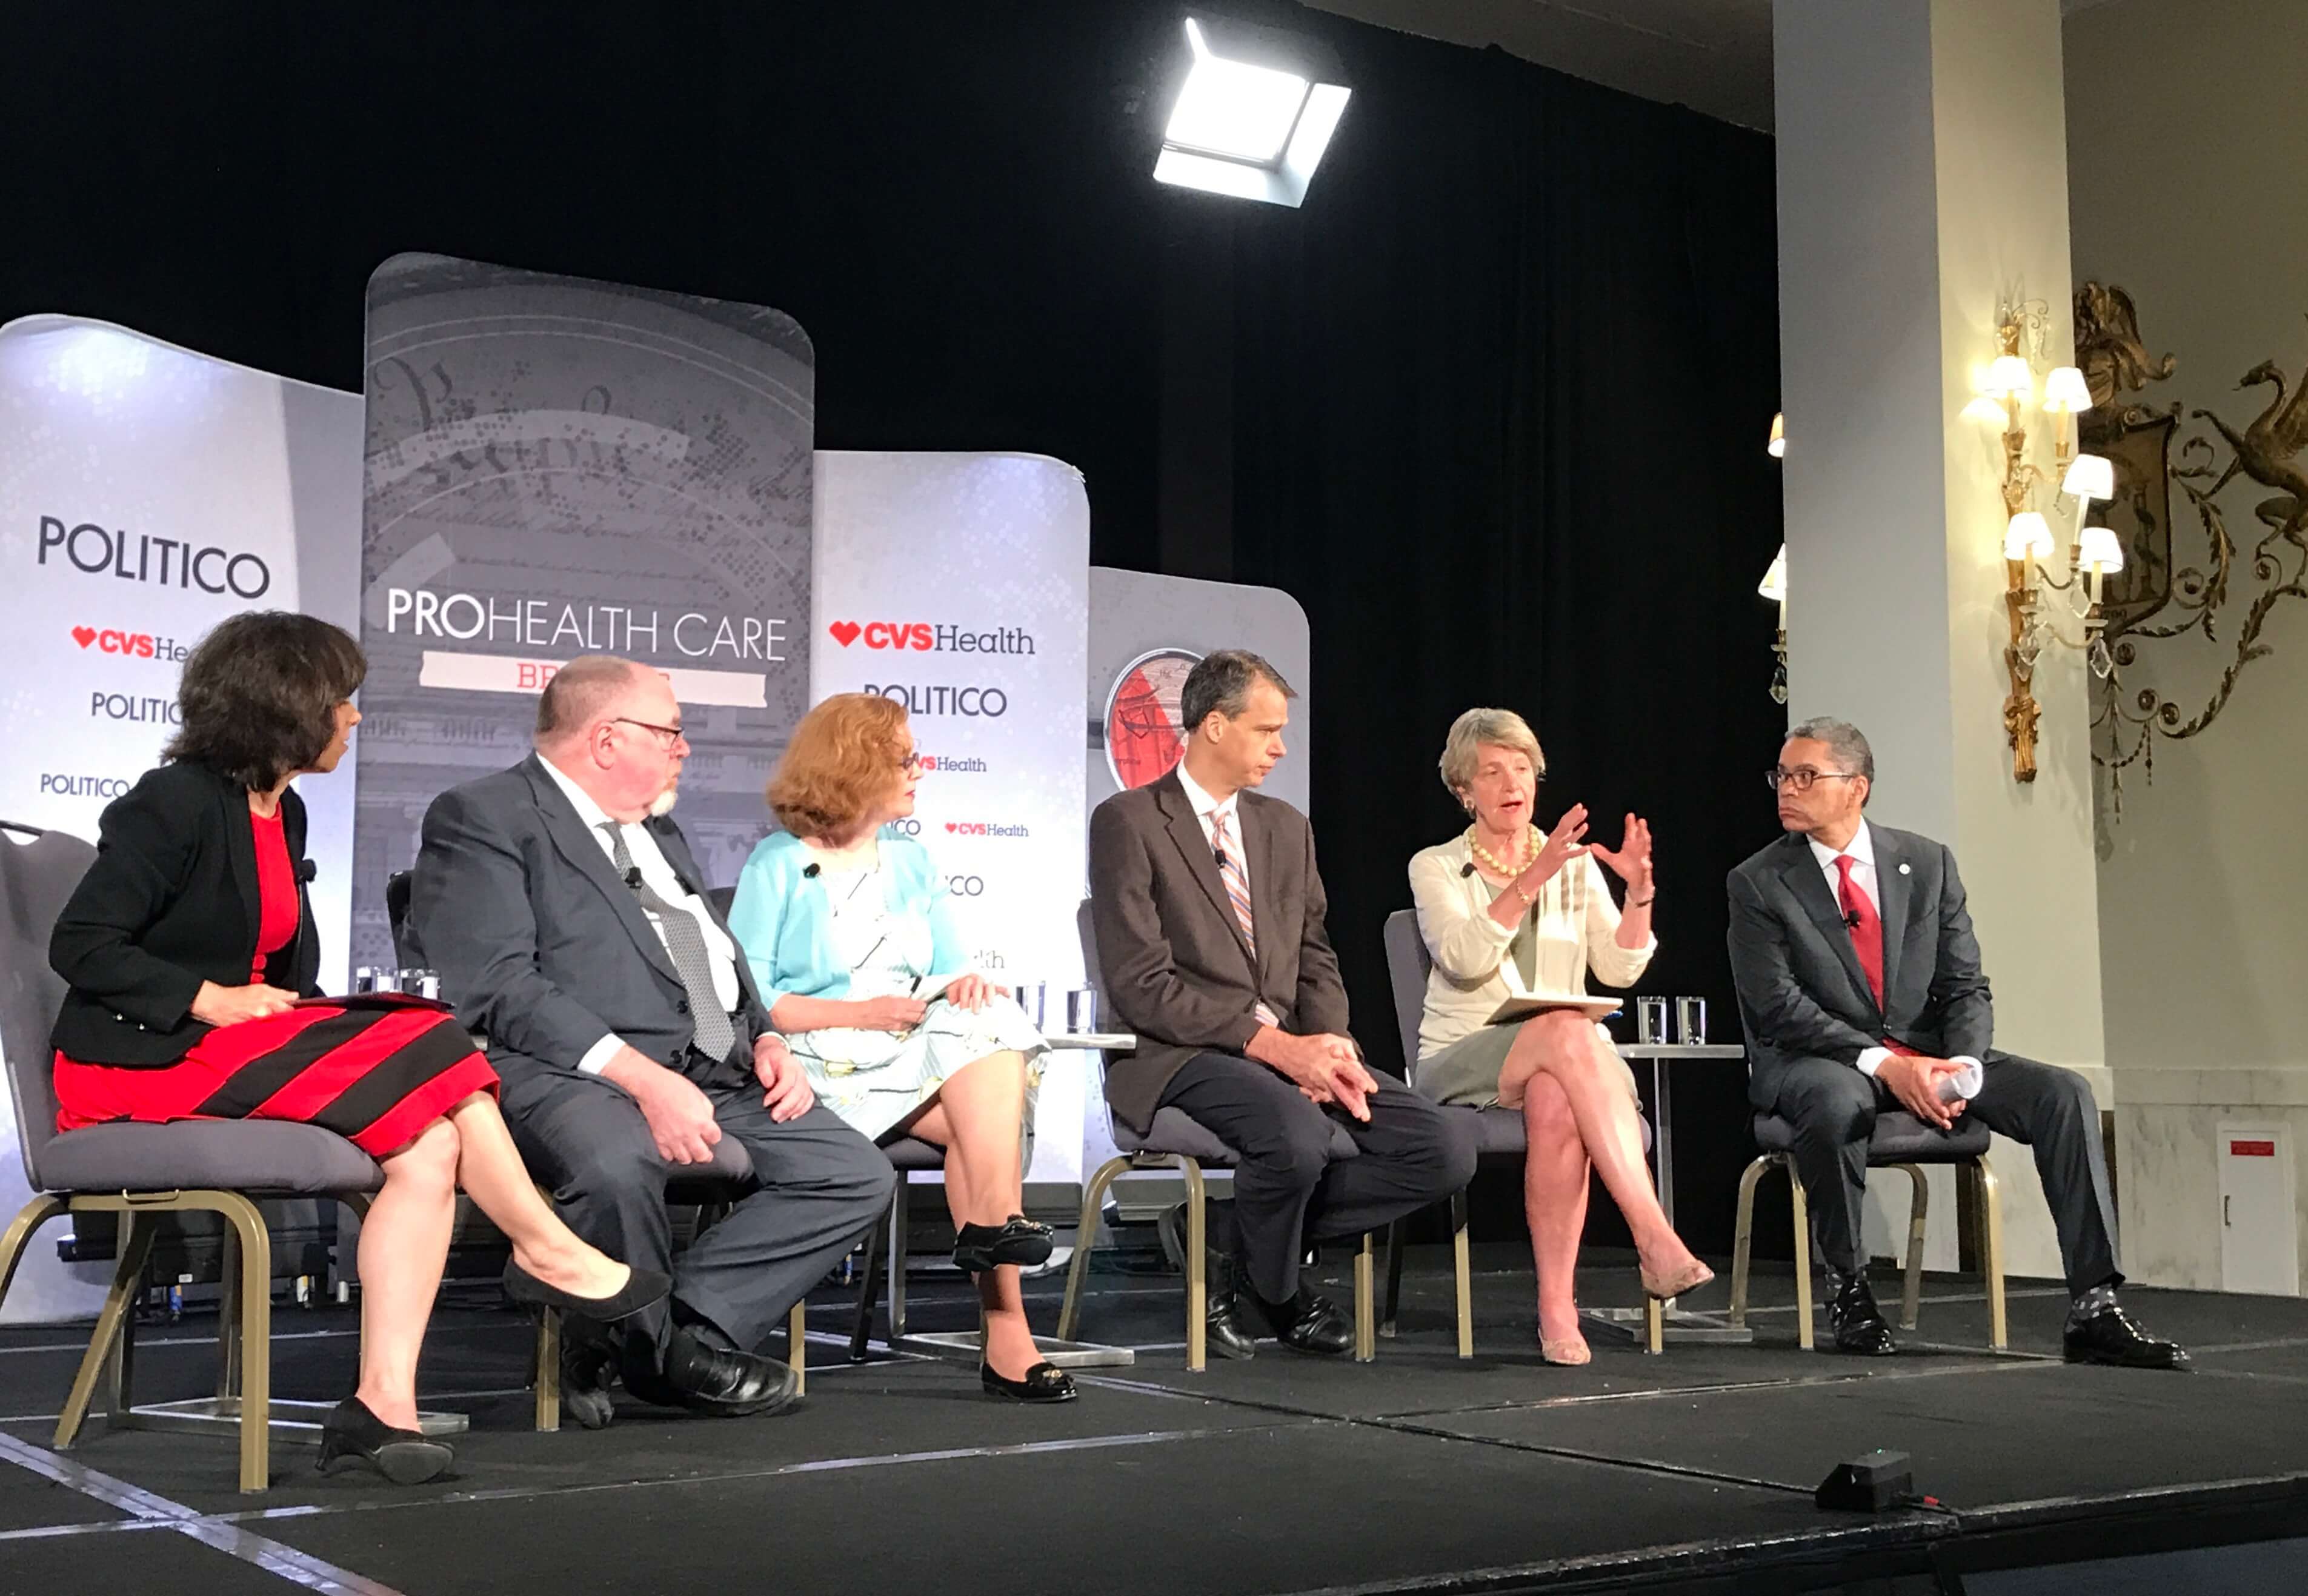 Panel of experts speak at Politico event